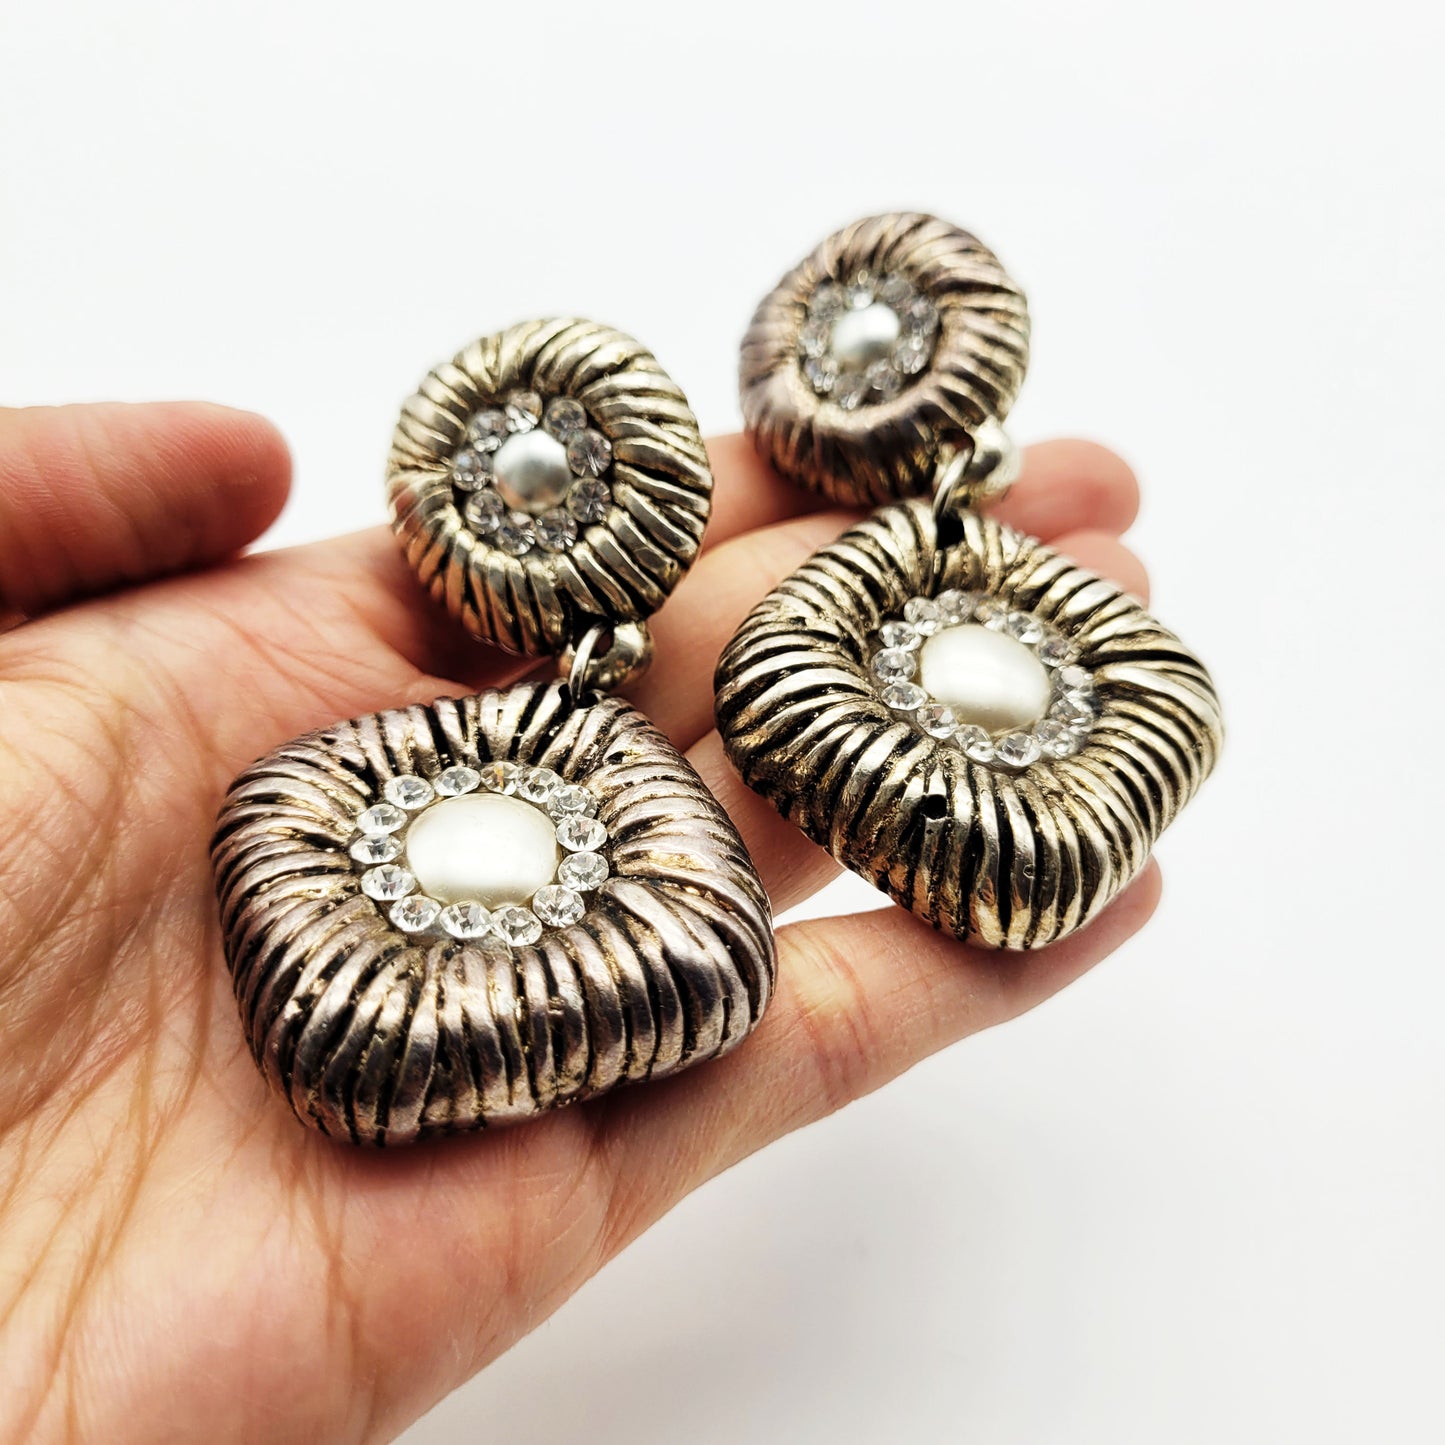 Vintage silvertone dangle earrings